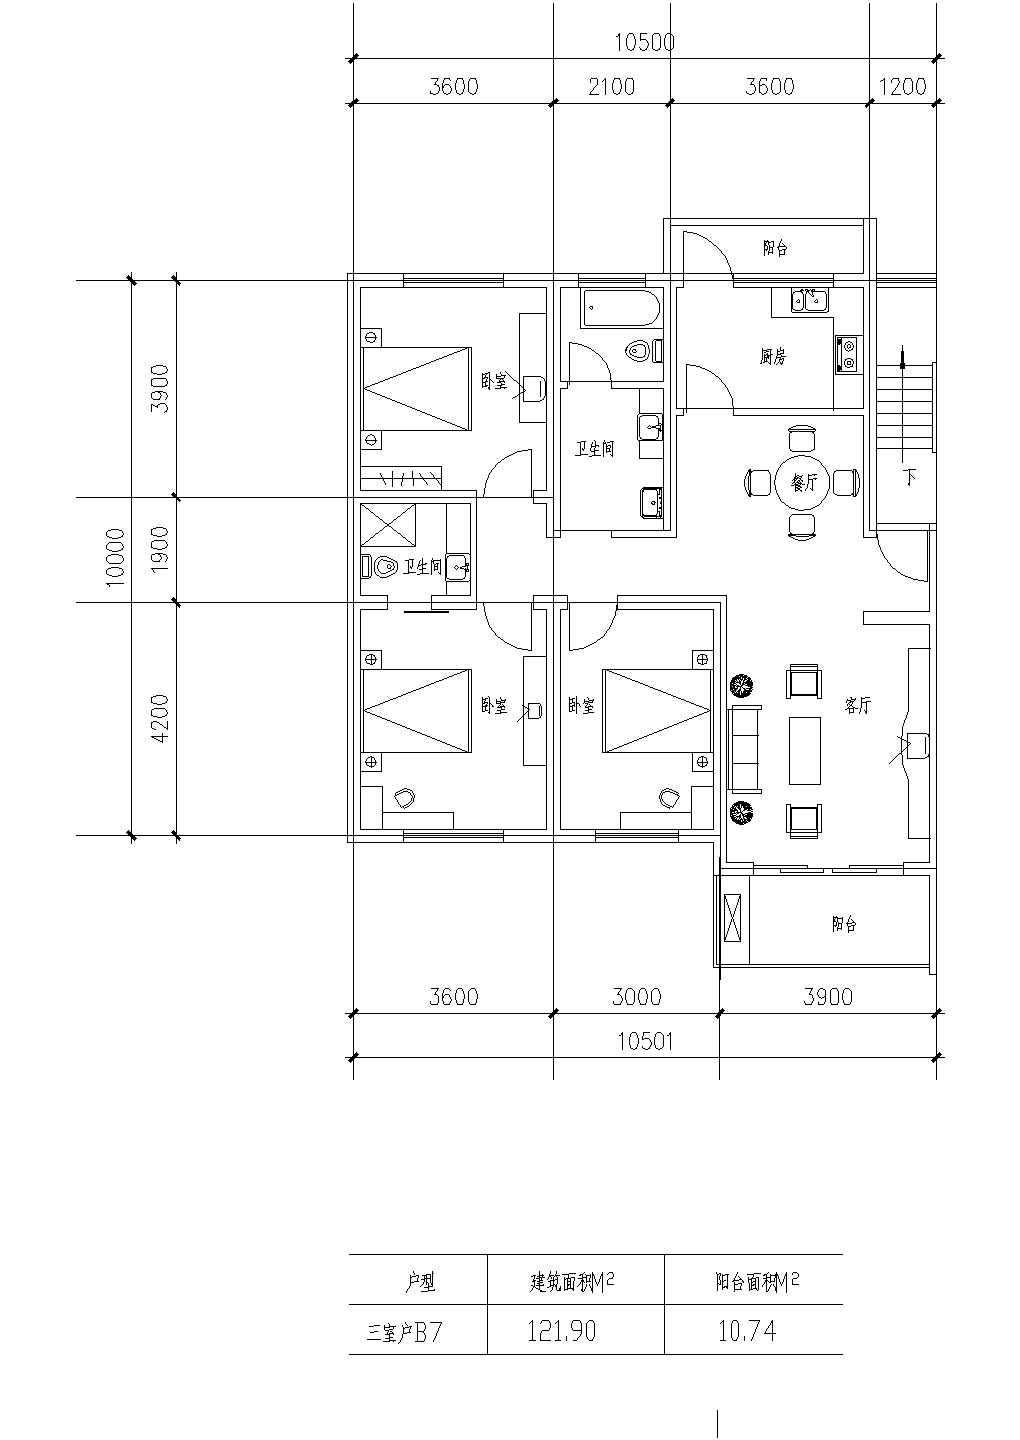 板式高层三室一厅单户型施工图纸